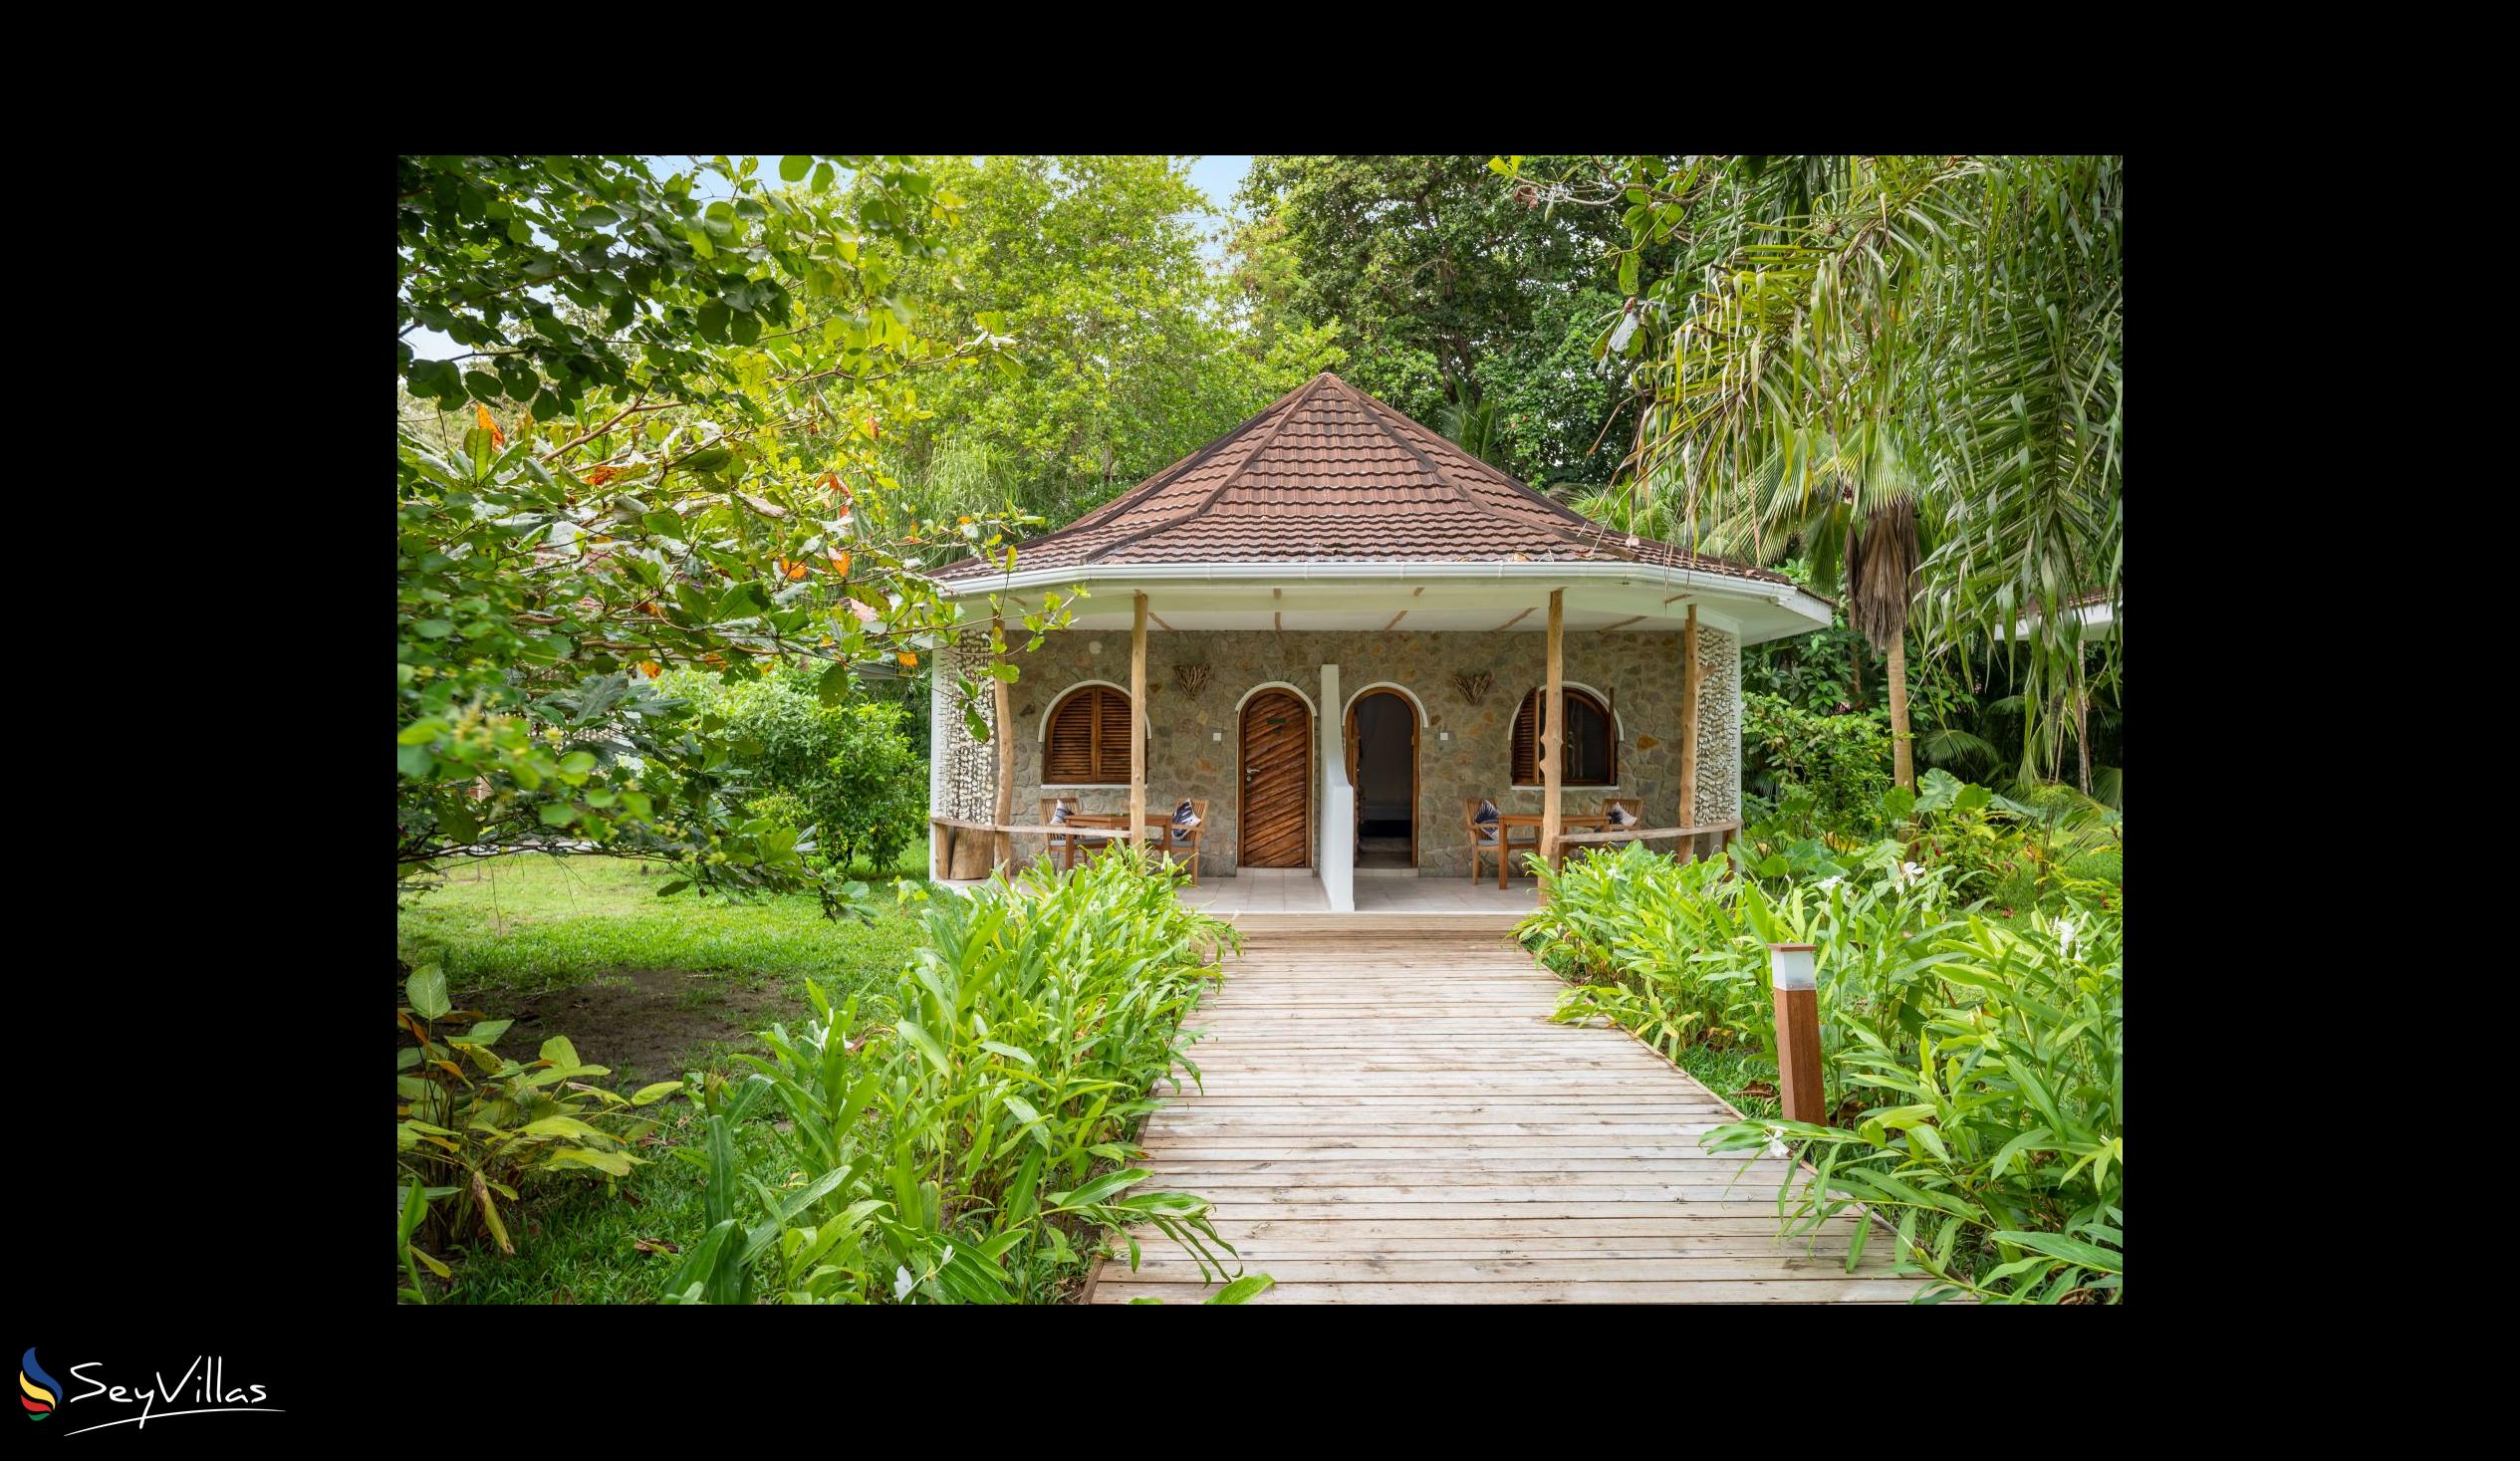 Photo 49: Bliss Hotel Praslin - Eden Garden - Superior Room - Praslin (Seychelles)